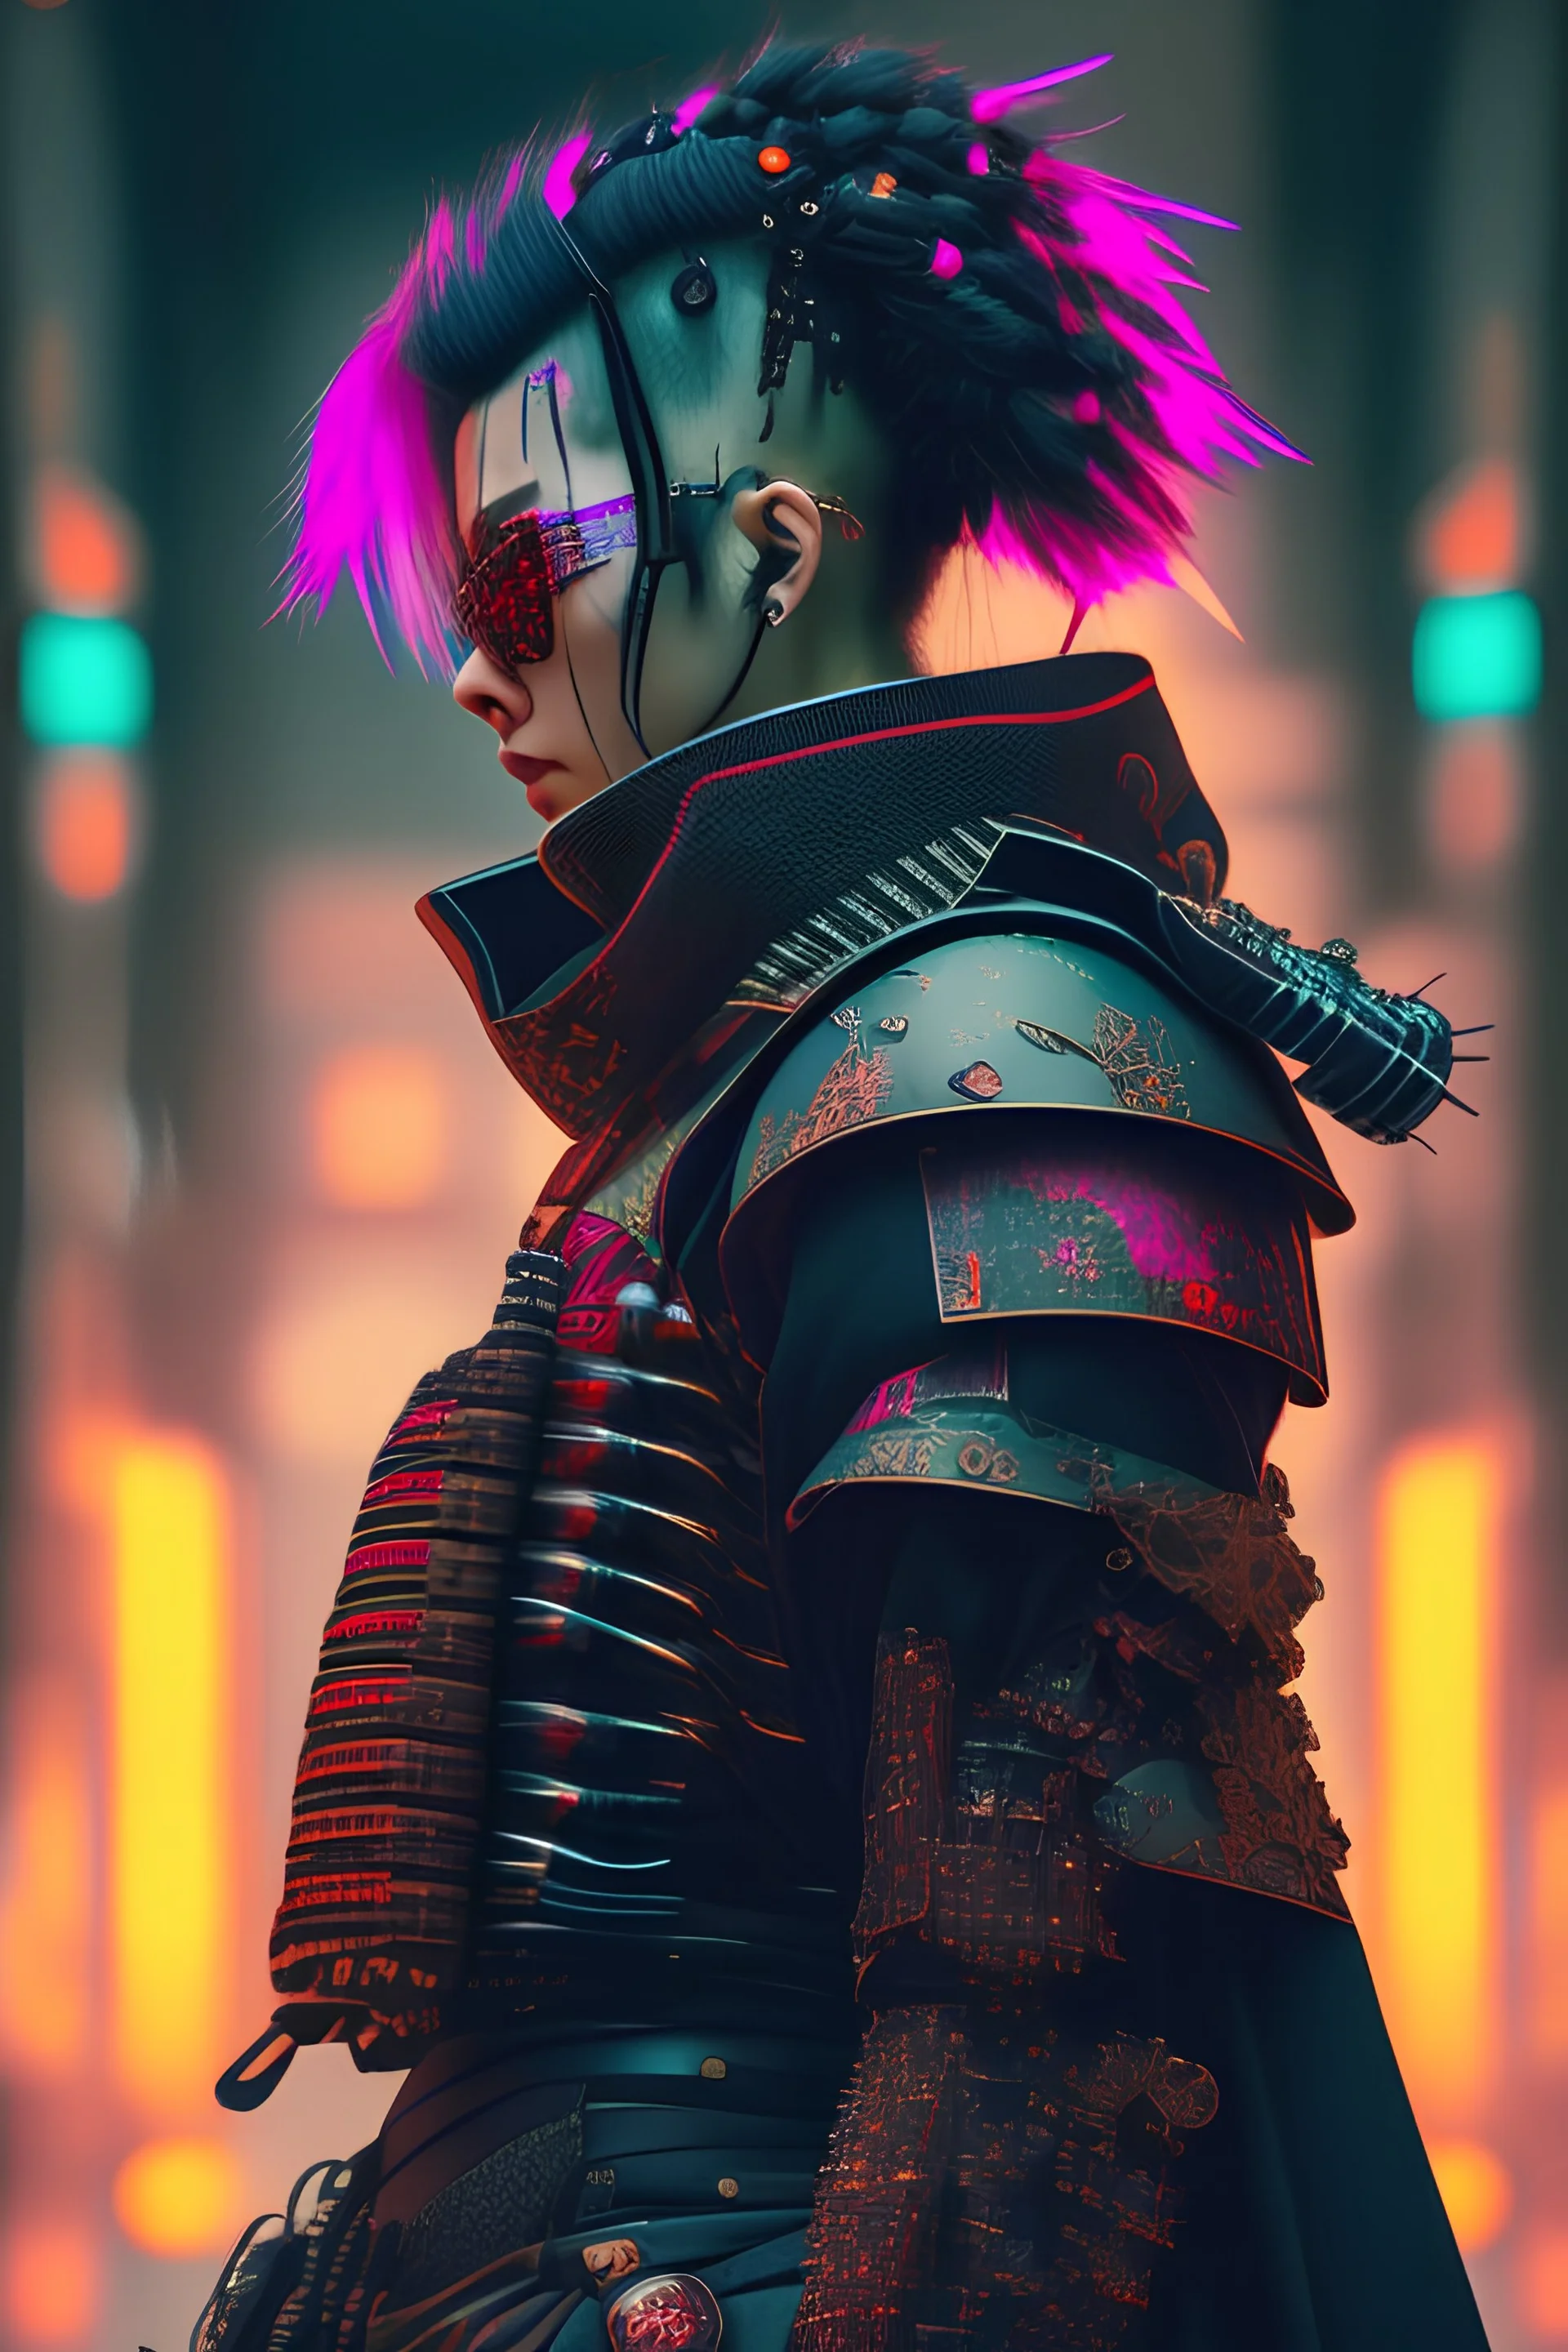 Cyberpunk samurai